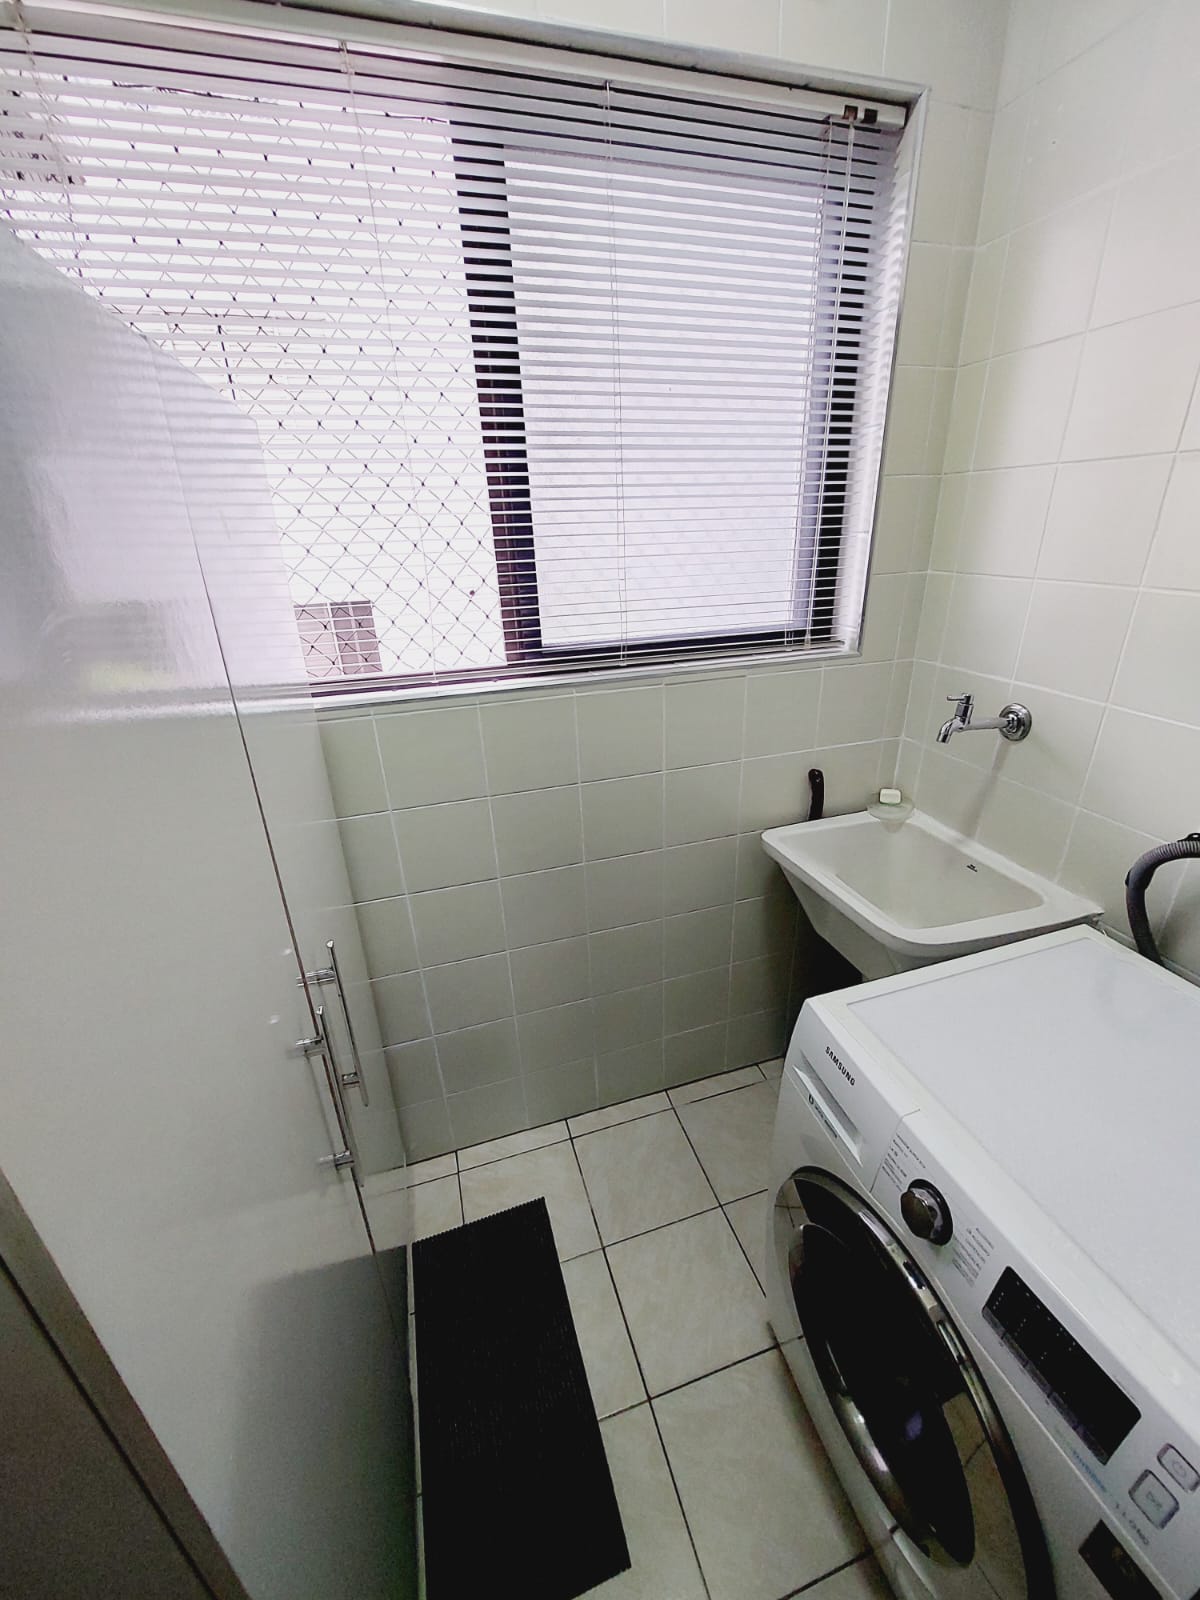 Foto do Imóvel - Lindo Apartamento 1 dorm no Itararé em Sv